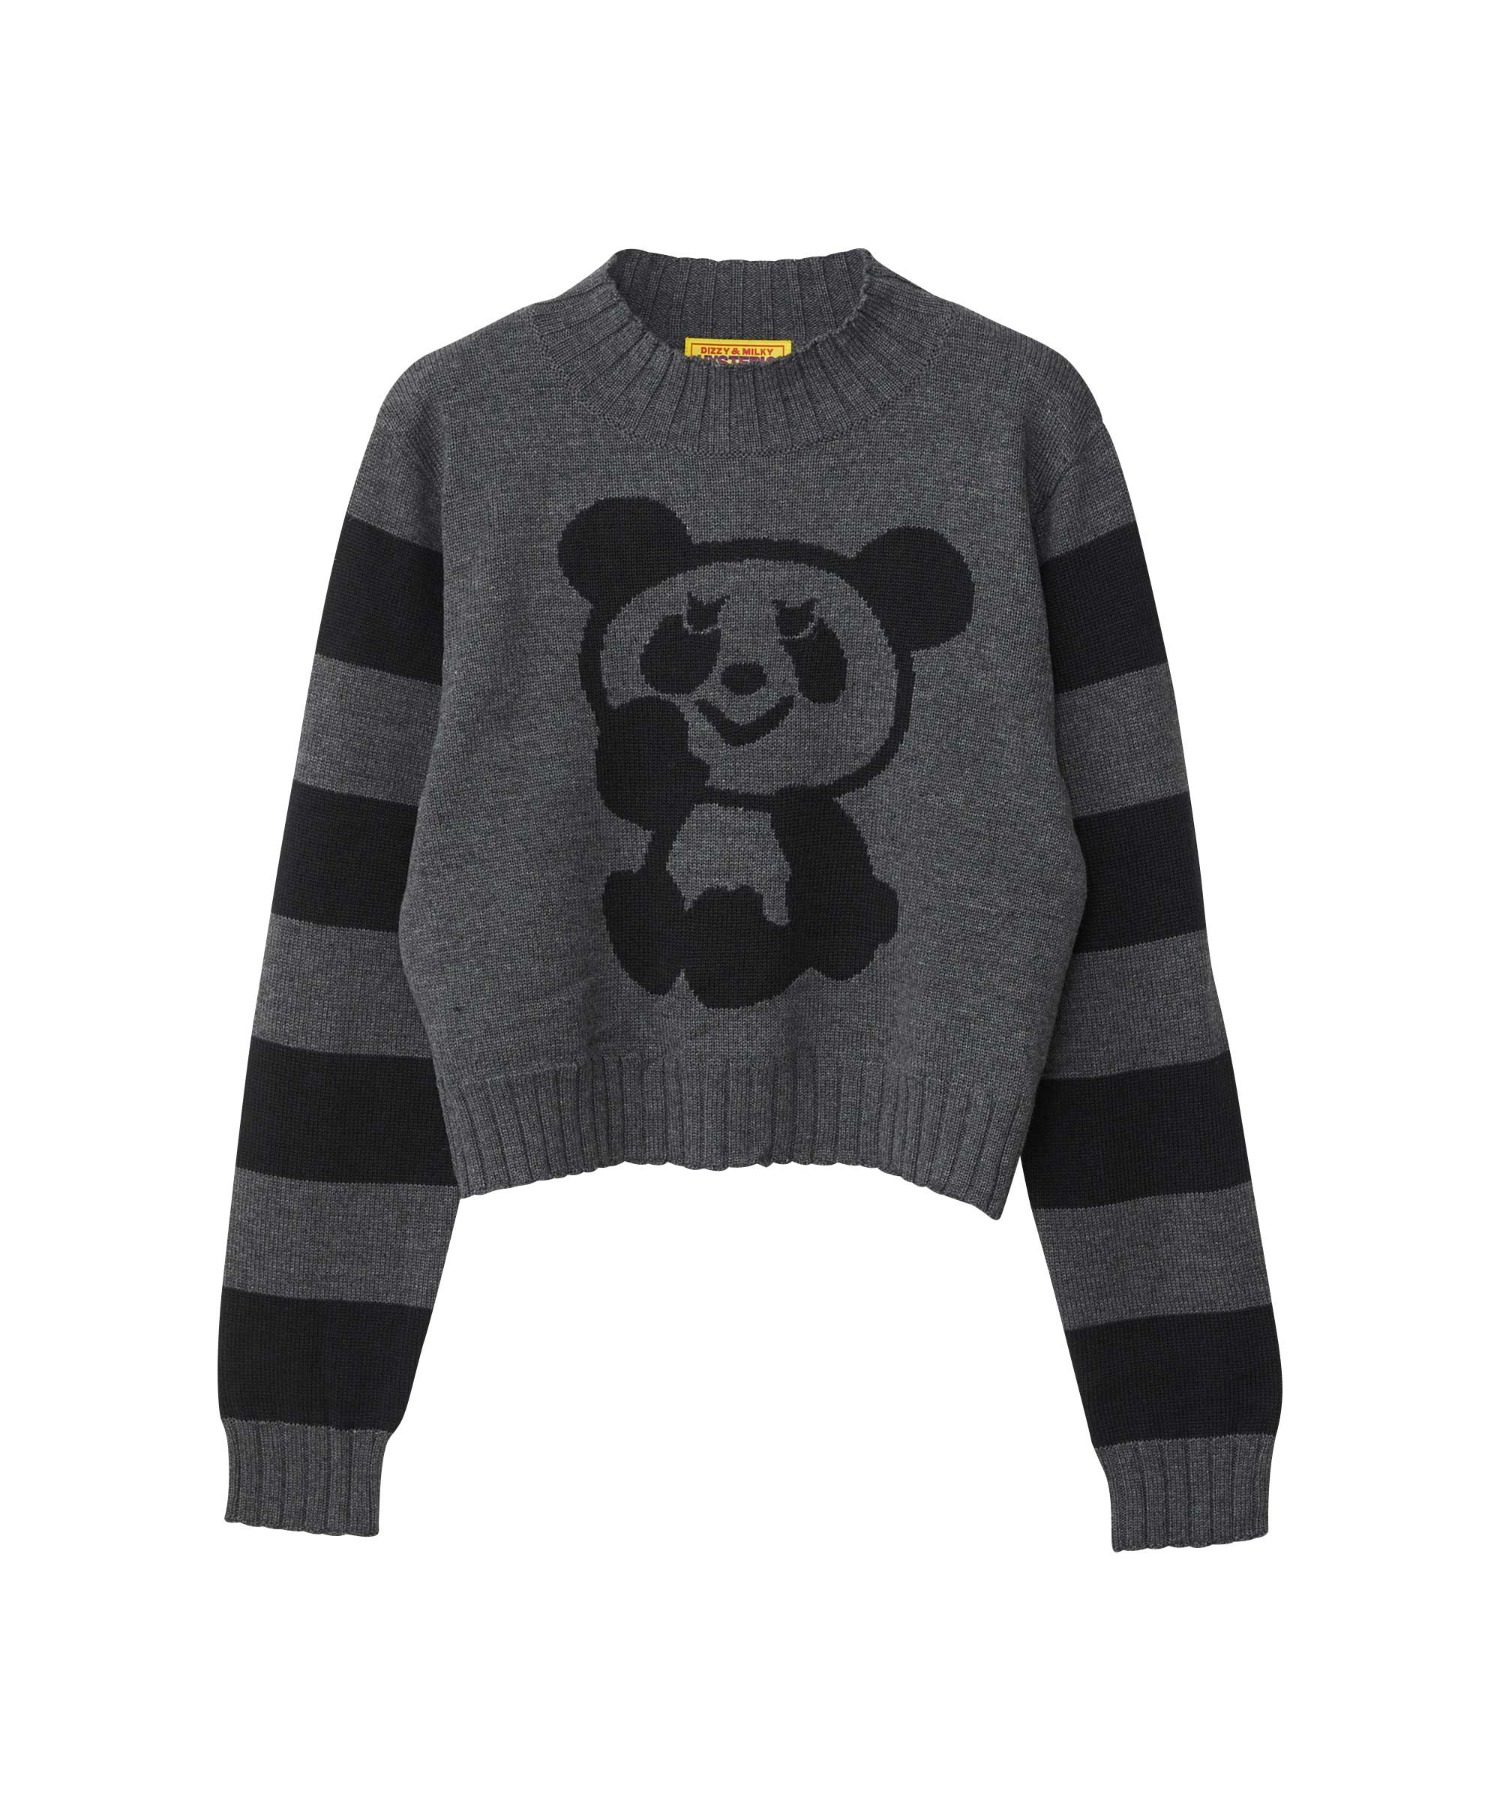 PANDA編込 ショートセーター